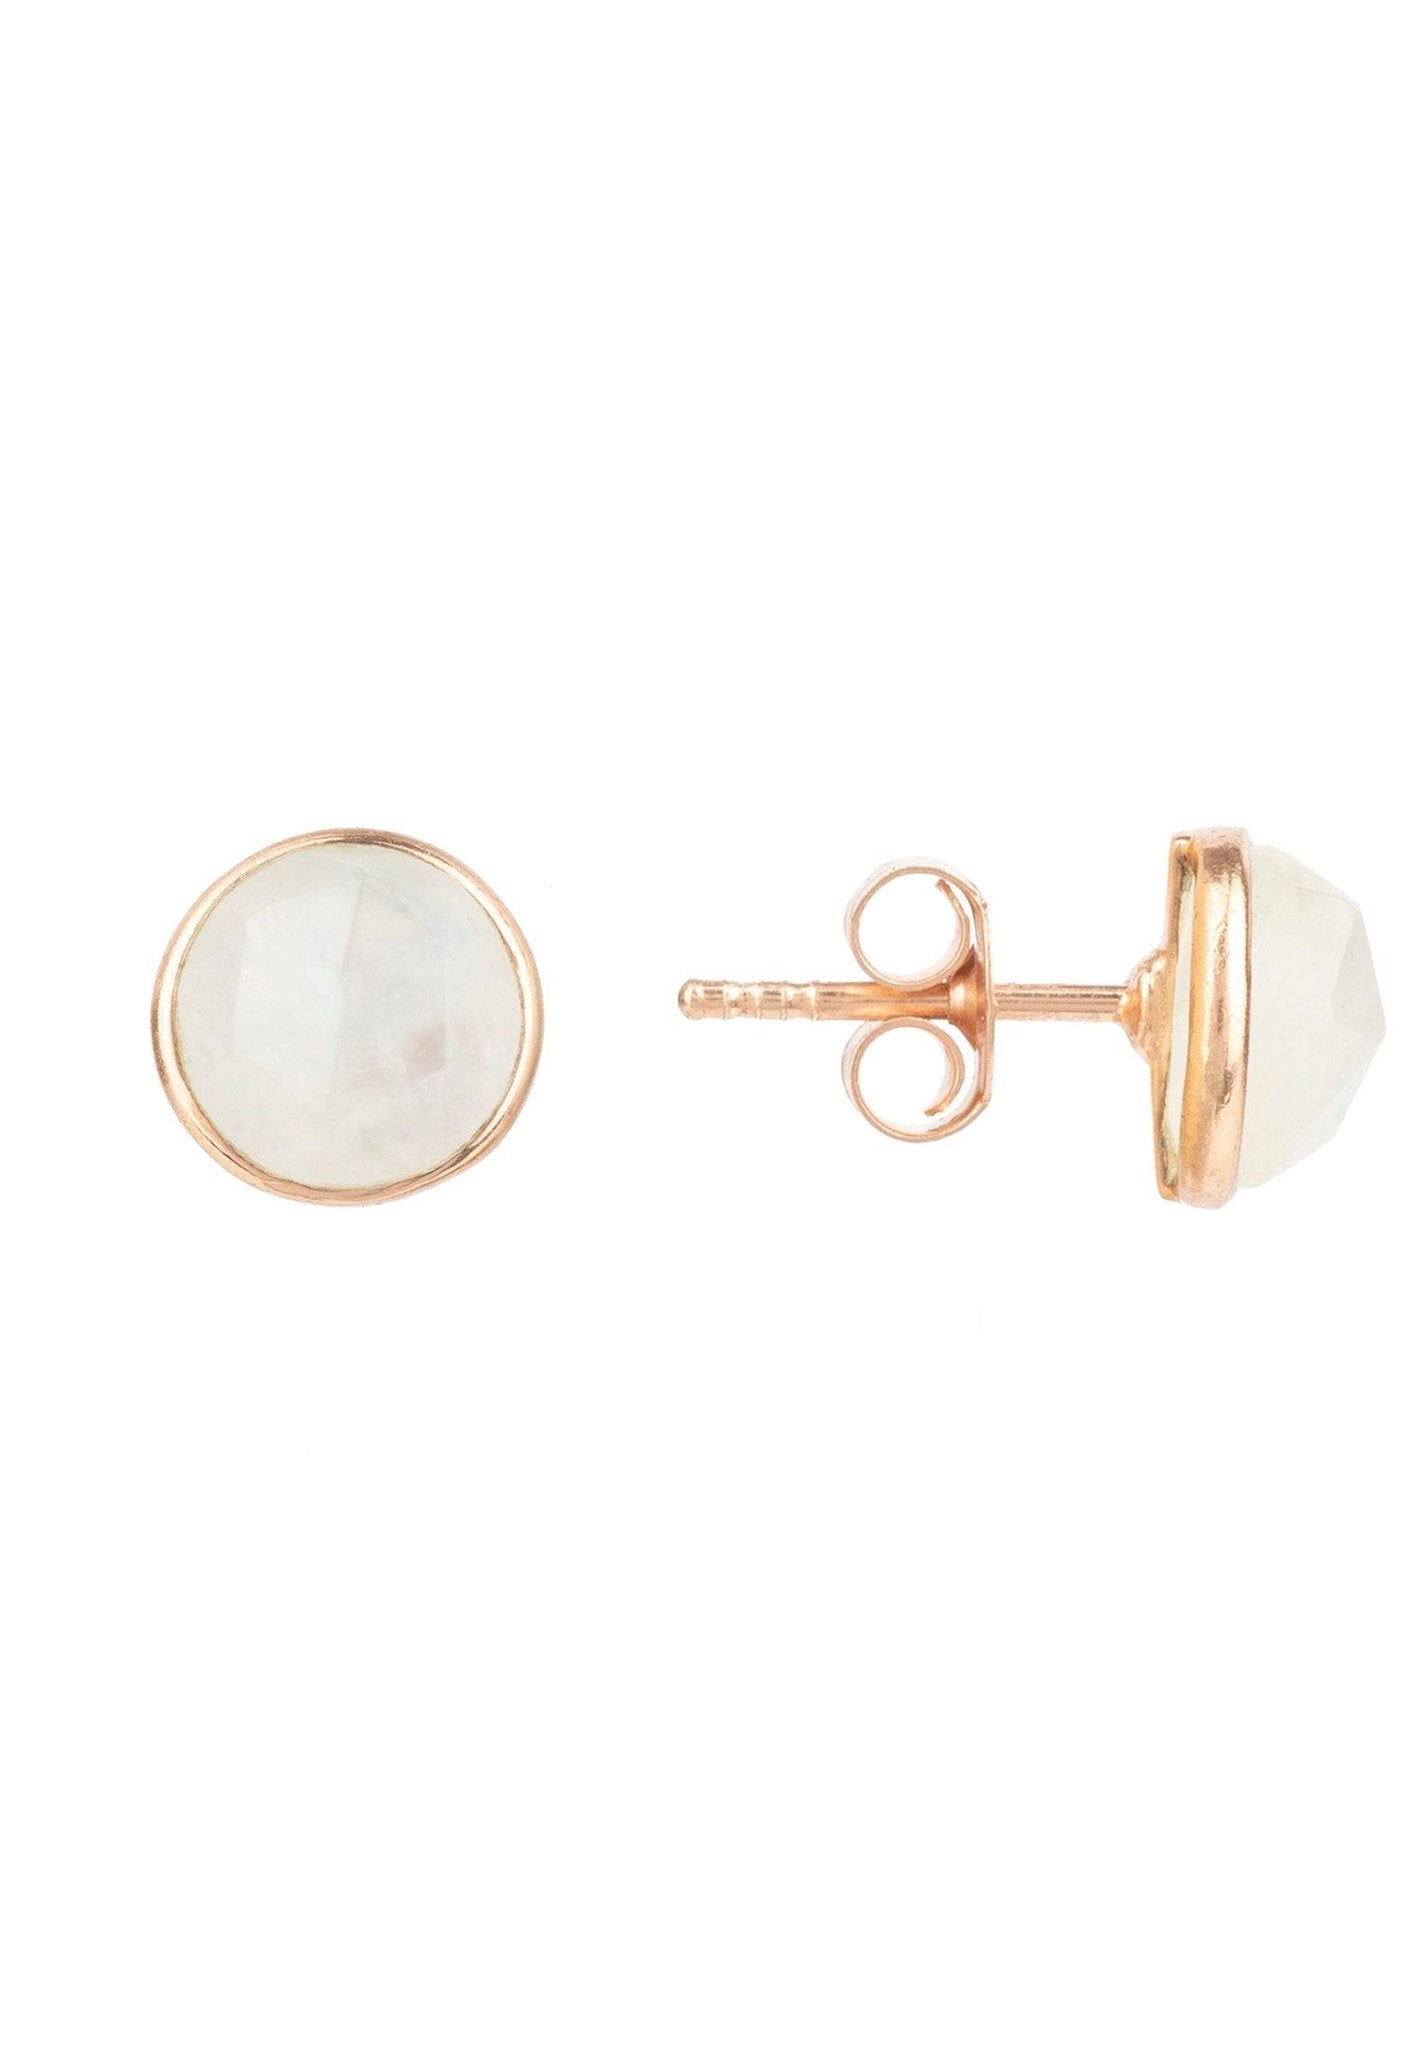 Medium Circle Gemstone Earrings Rosegold Moonstone - LATELITA Earrings